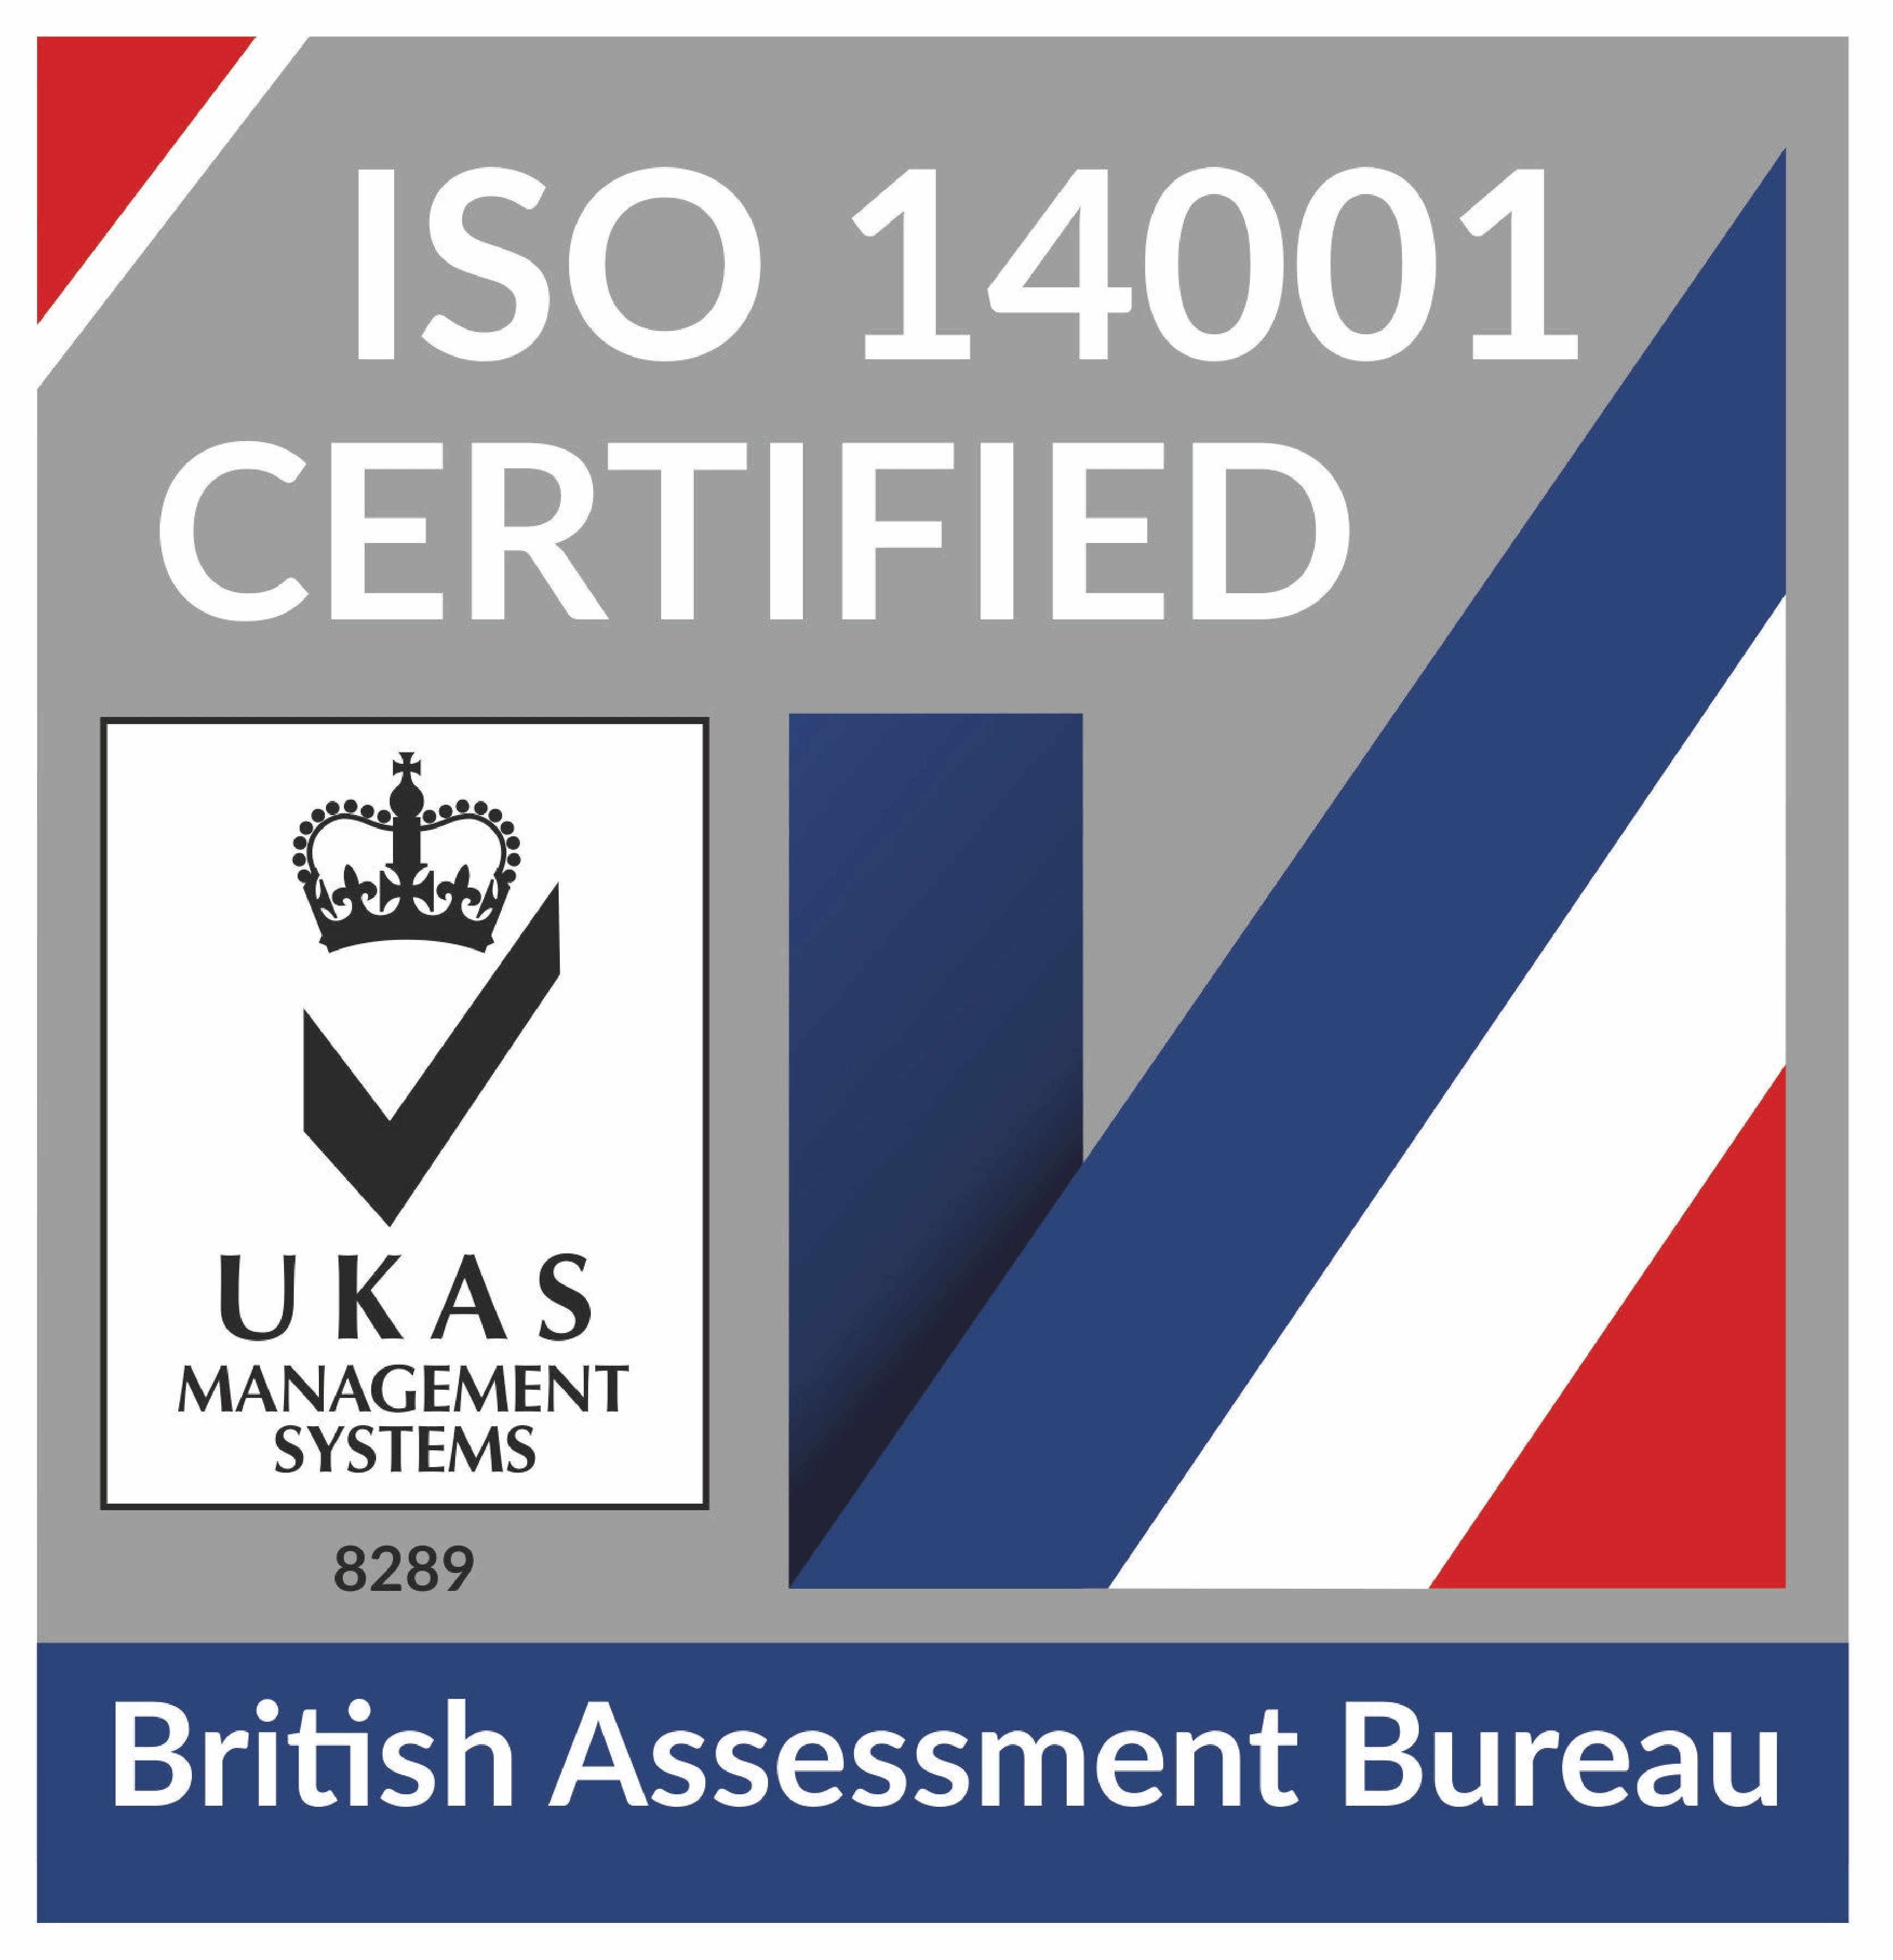 The British Assessment Bureau ISO14001